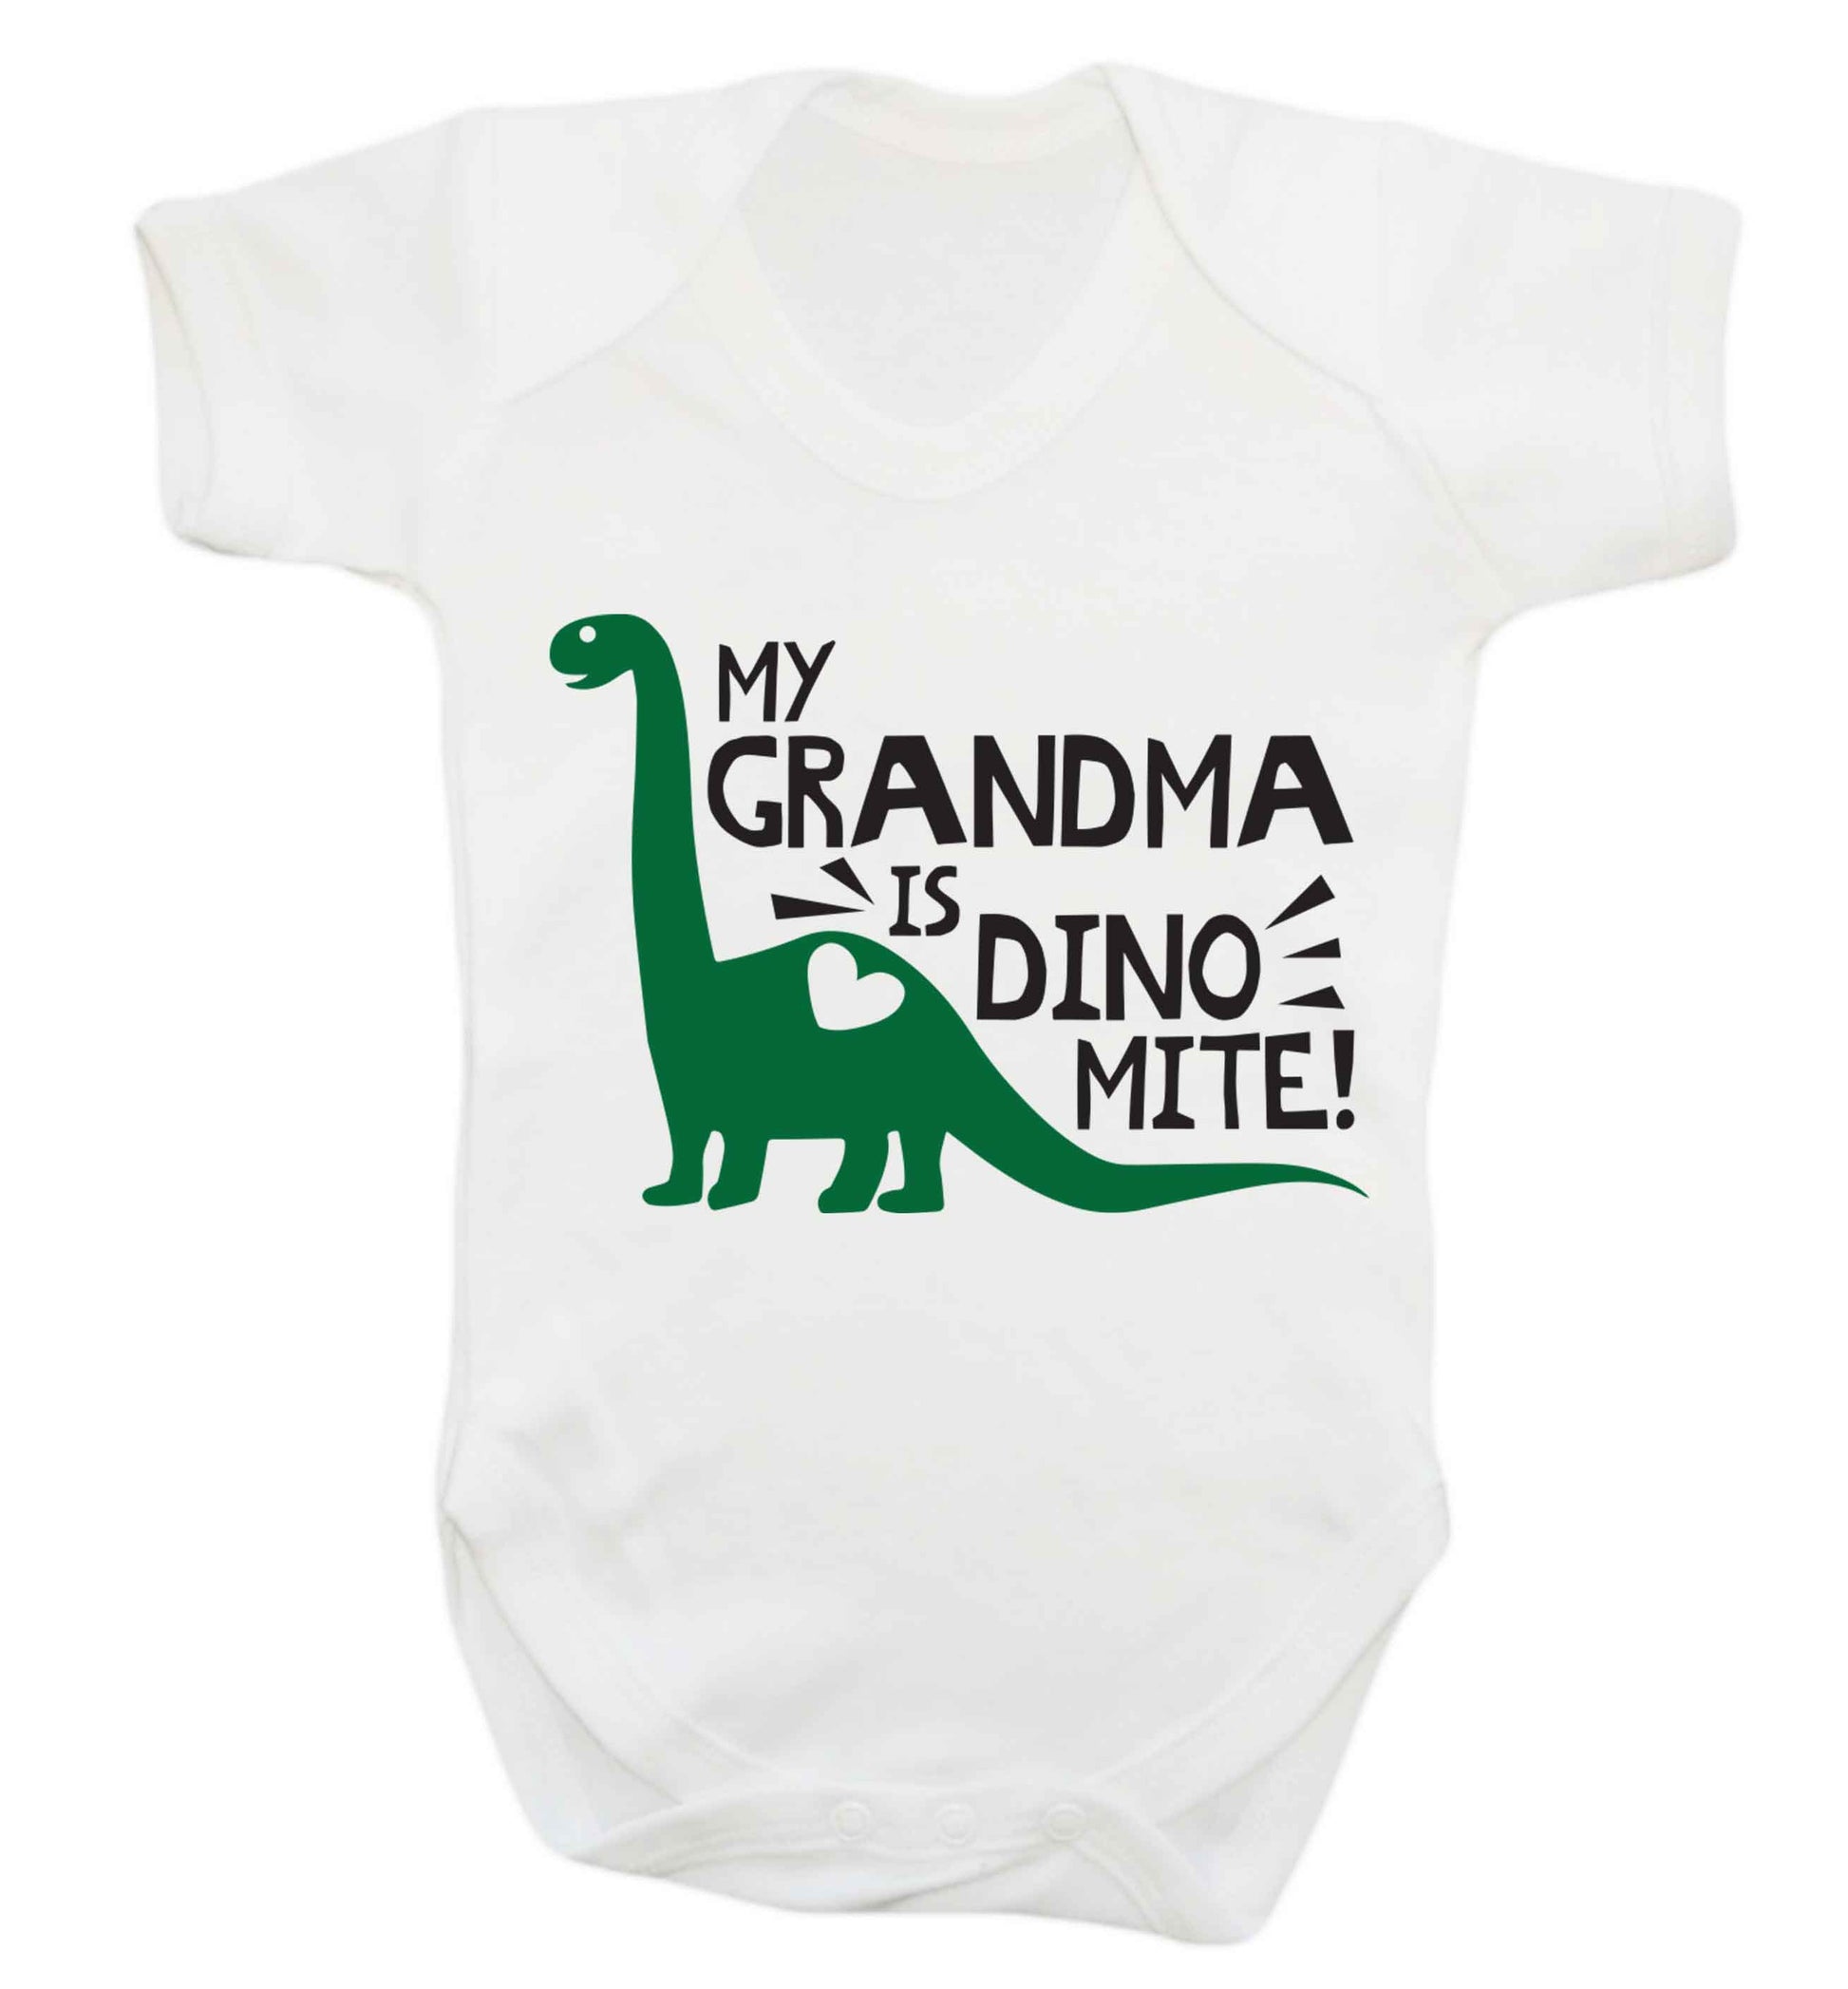 My grandma is dinomite! Baby Vest white 18-24 months